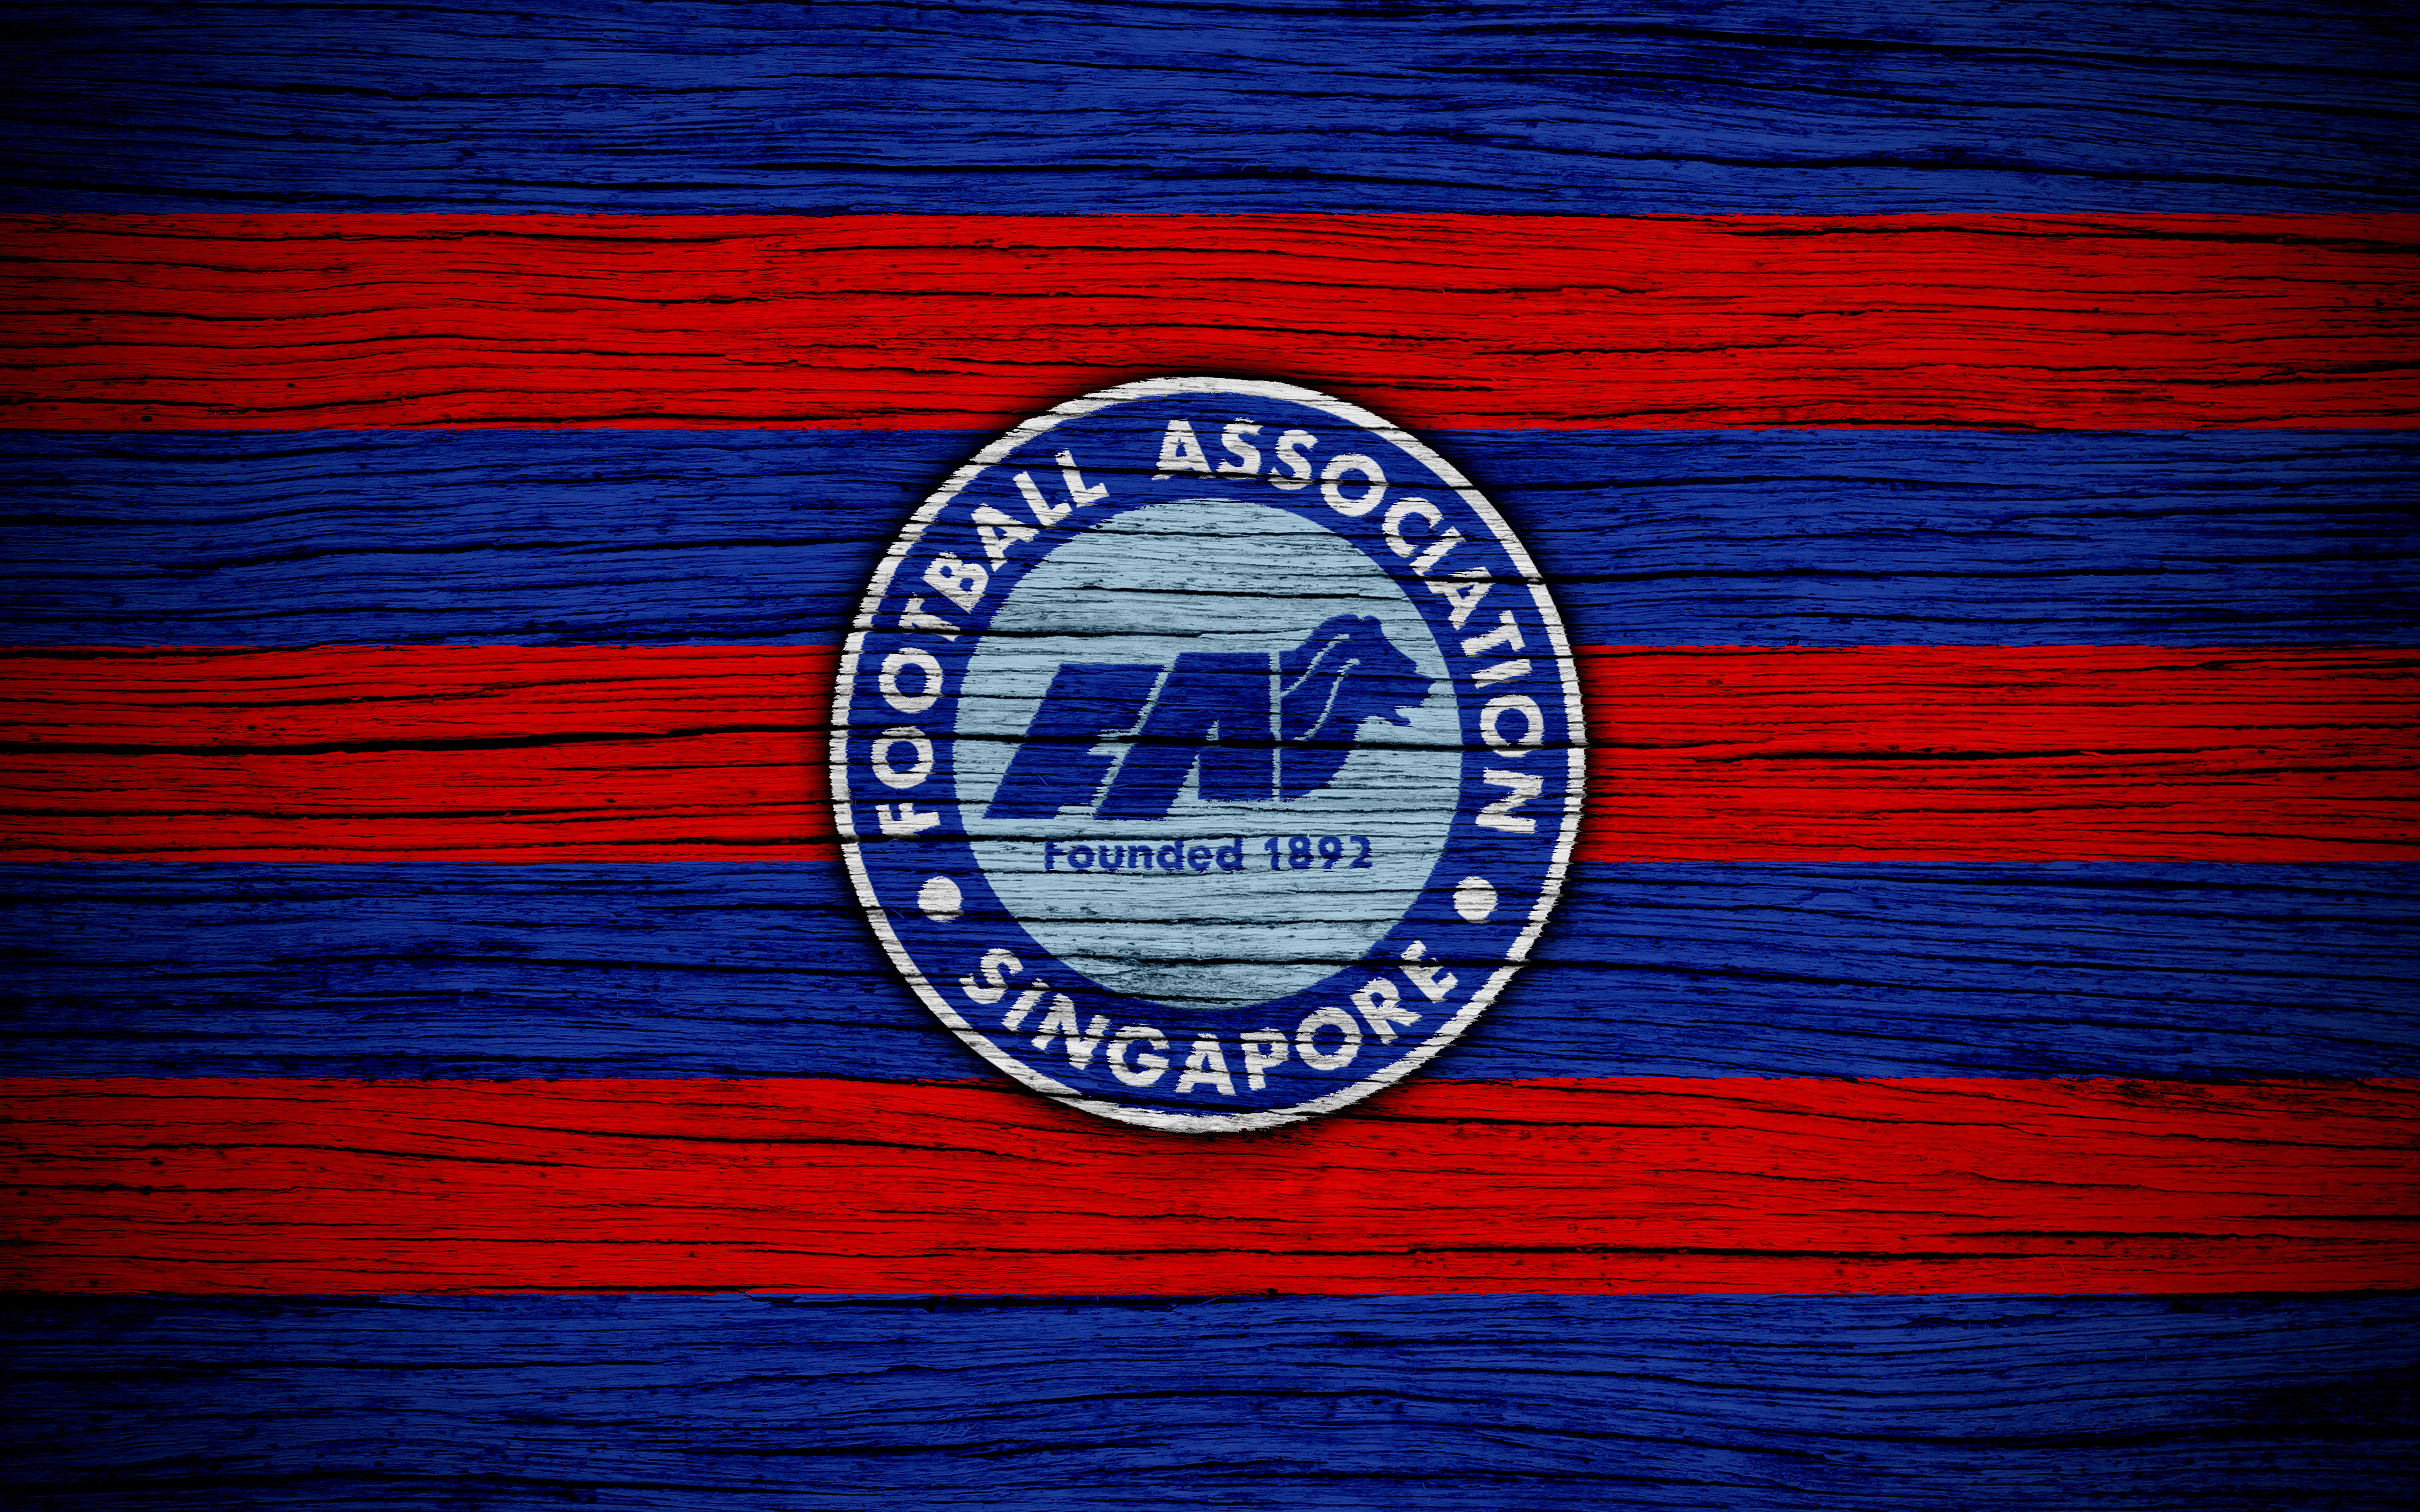 Скачать обои Сборная Сингапура По Футболу на телефон бесплатно